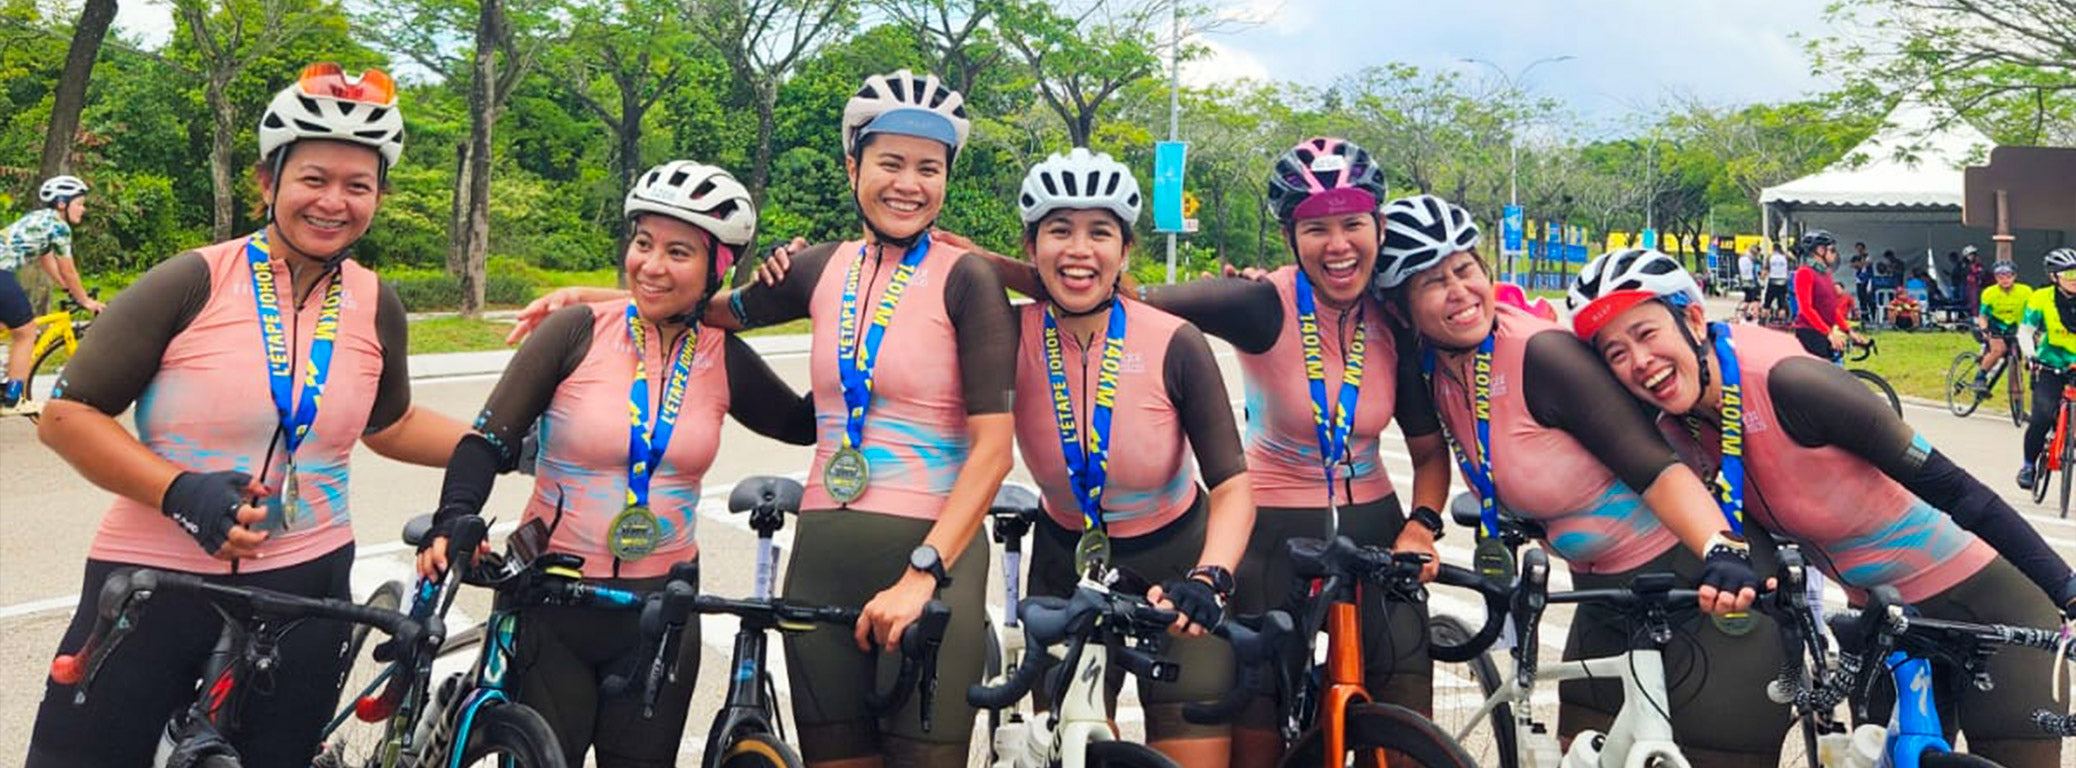 Les Pedal Bellas heureux d'avoir relevé un défi cycliste de 140 km en équipe.